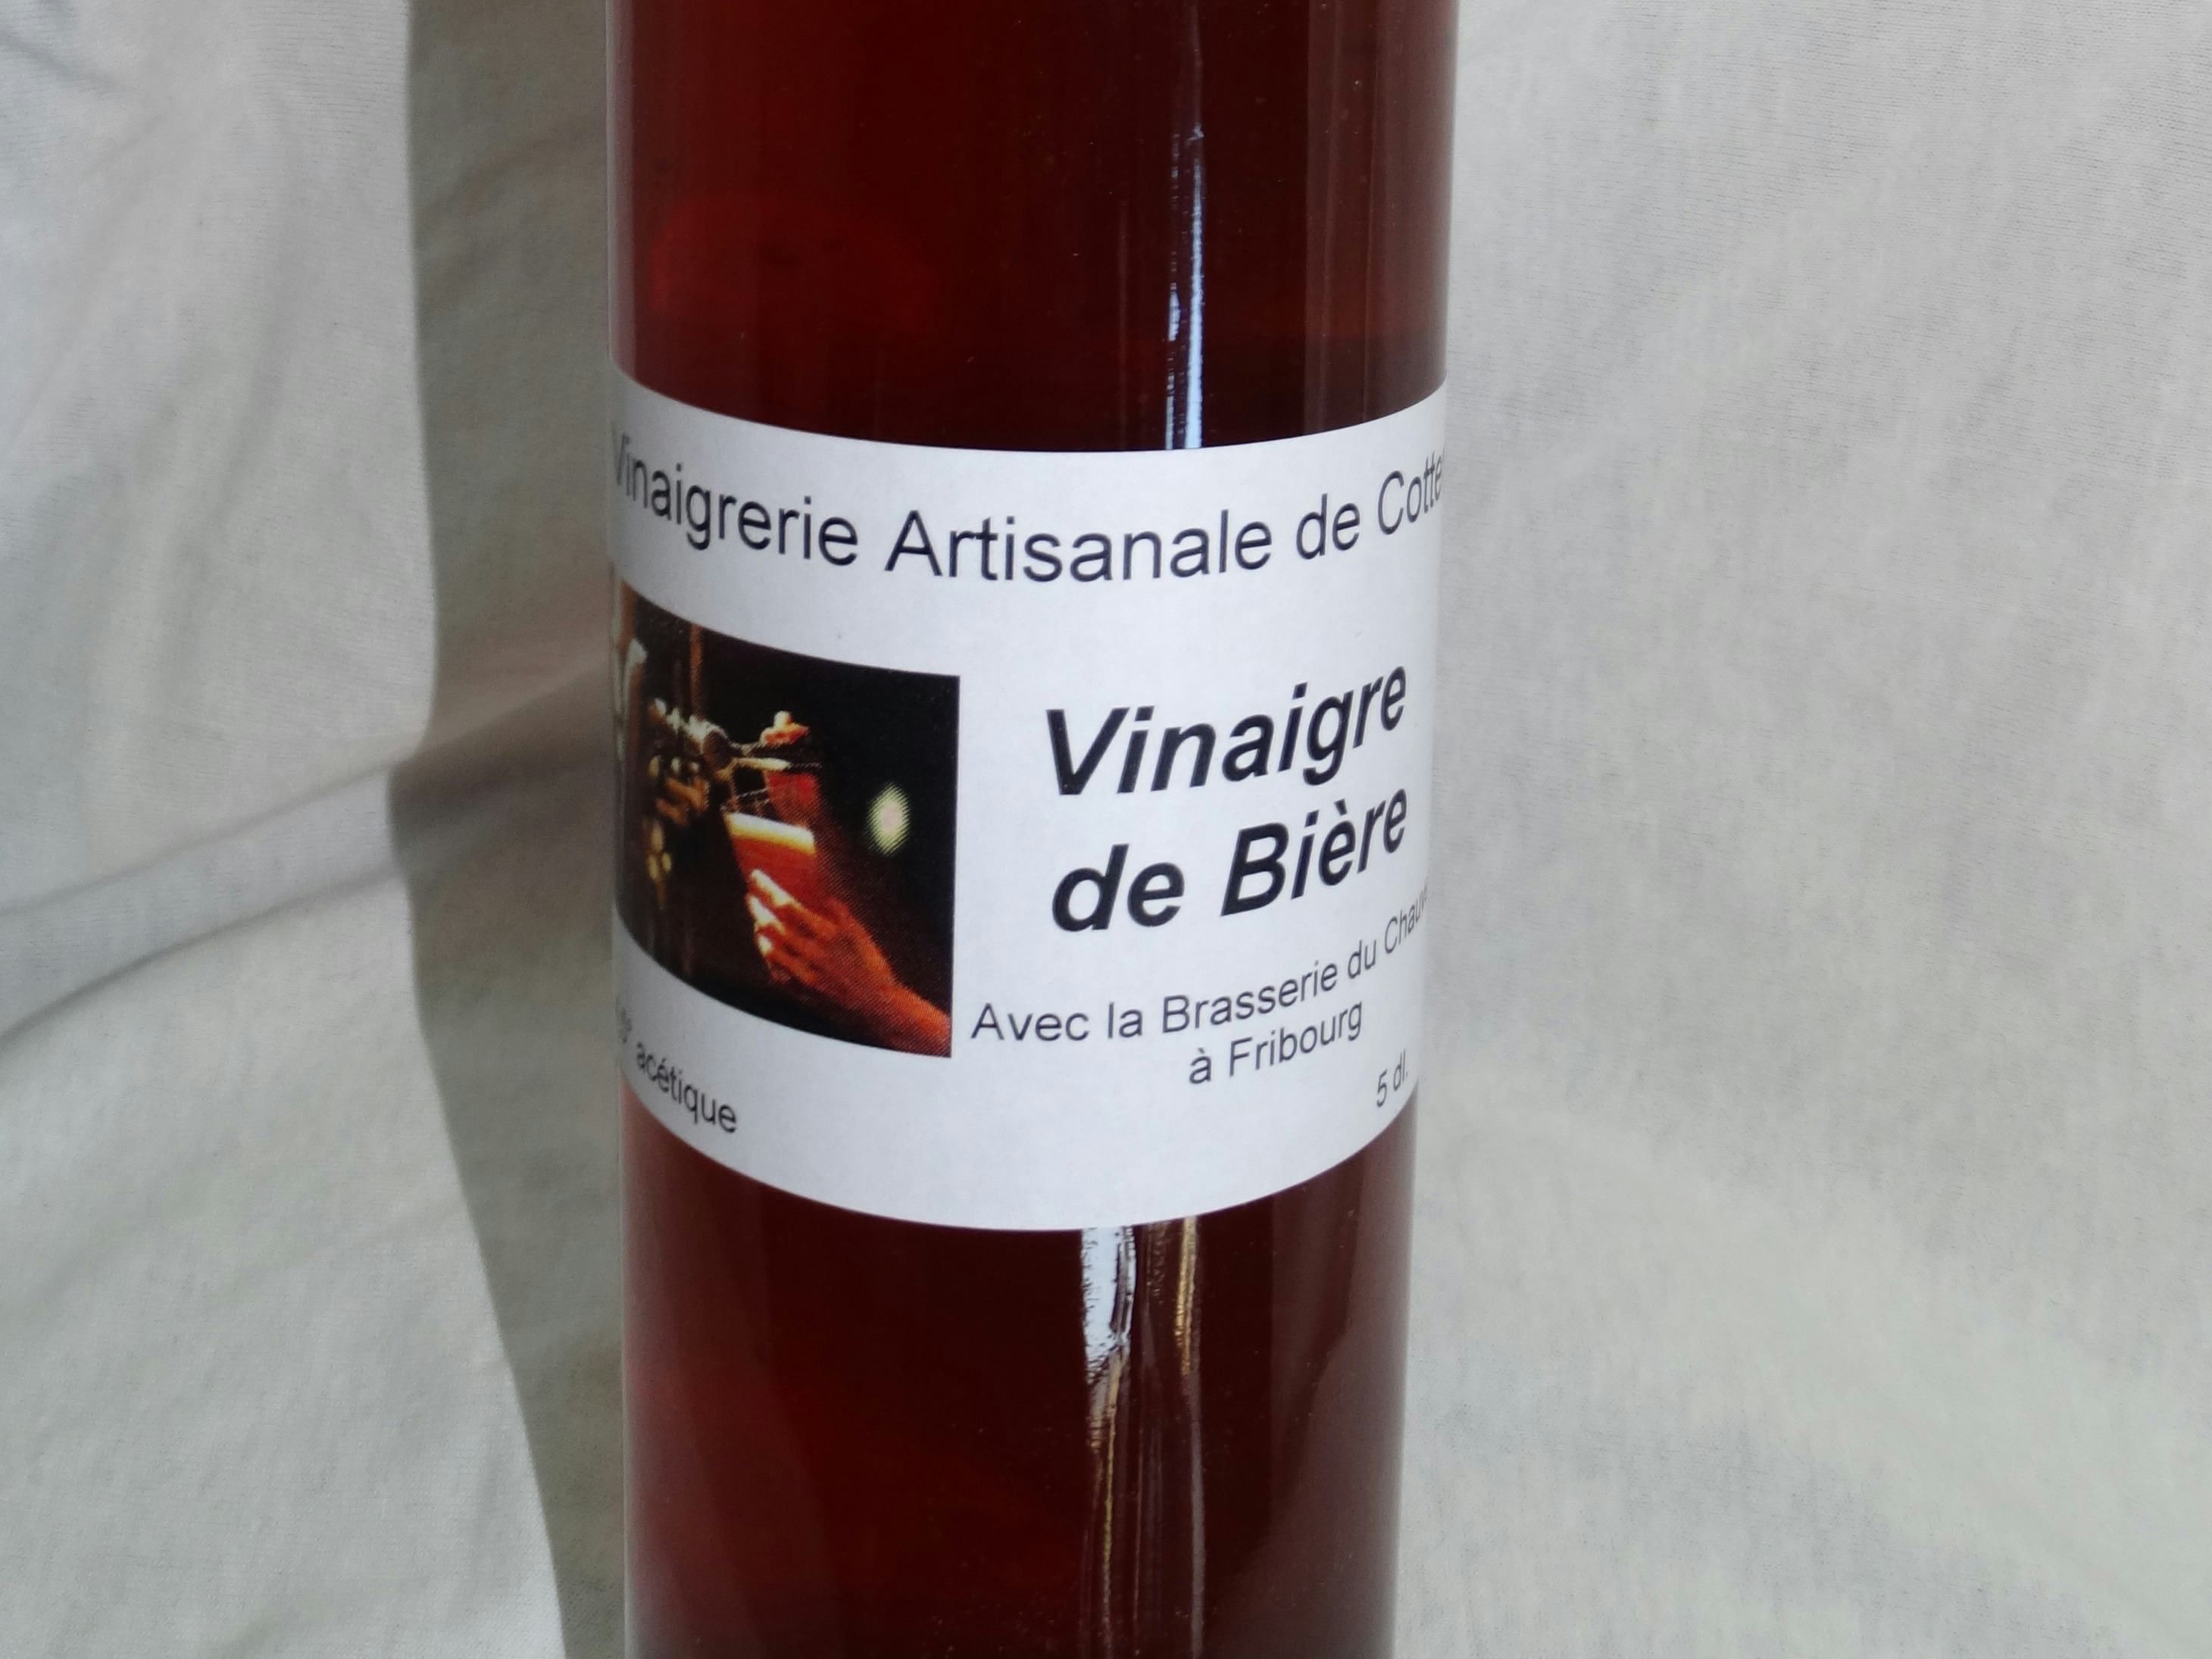 Bieressig, Vinaigrerie-Moutarderie du Grand-Pré, Hautemorges, image 1 | Mimelis